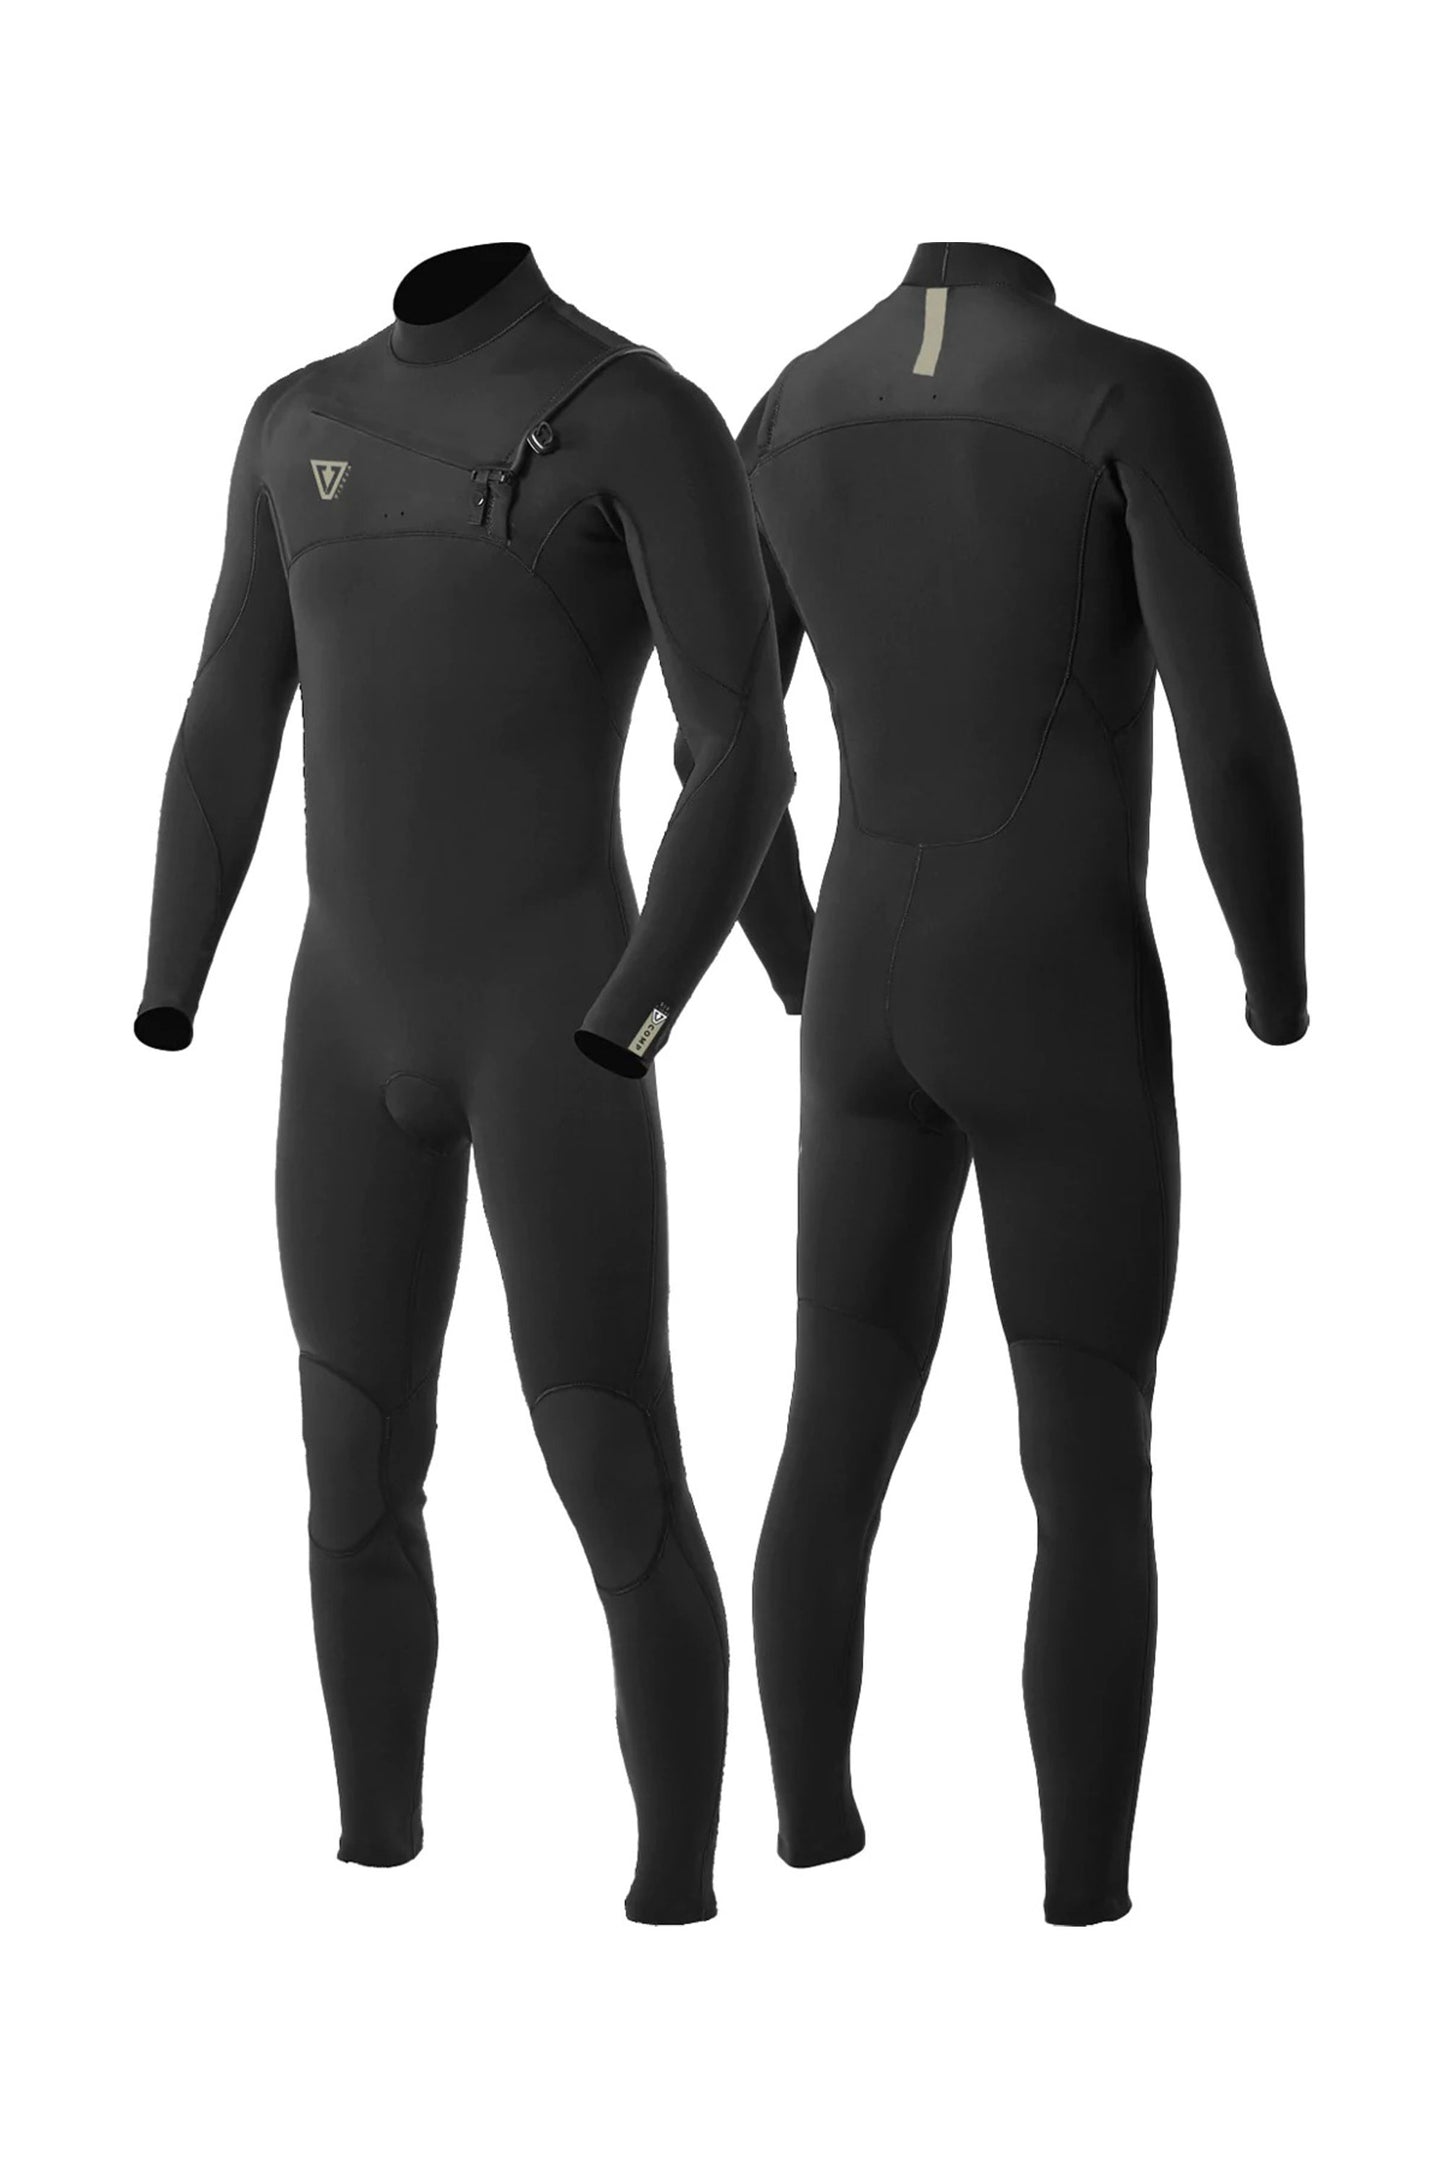    Pukas-Surf-Shop-vissla-wetsuit-Seven-Seas-Comp-3-2-Chest-Zip